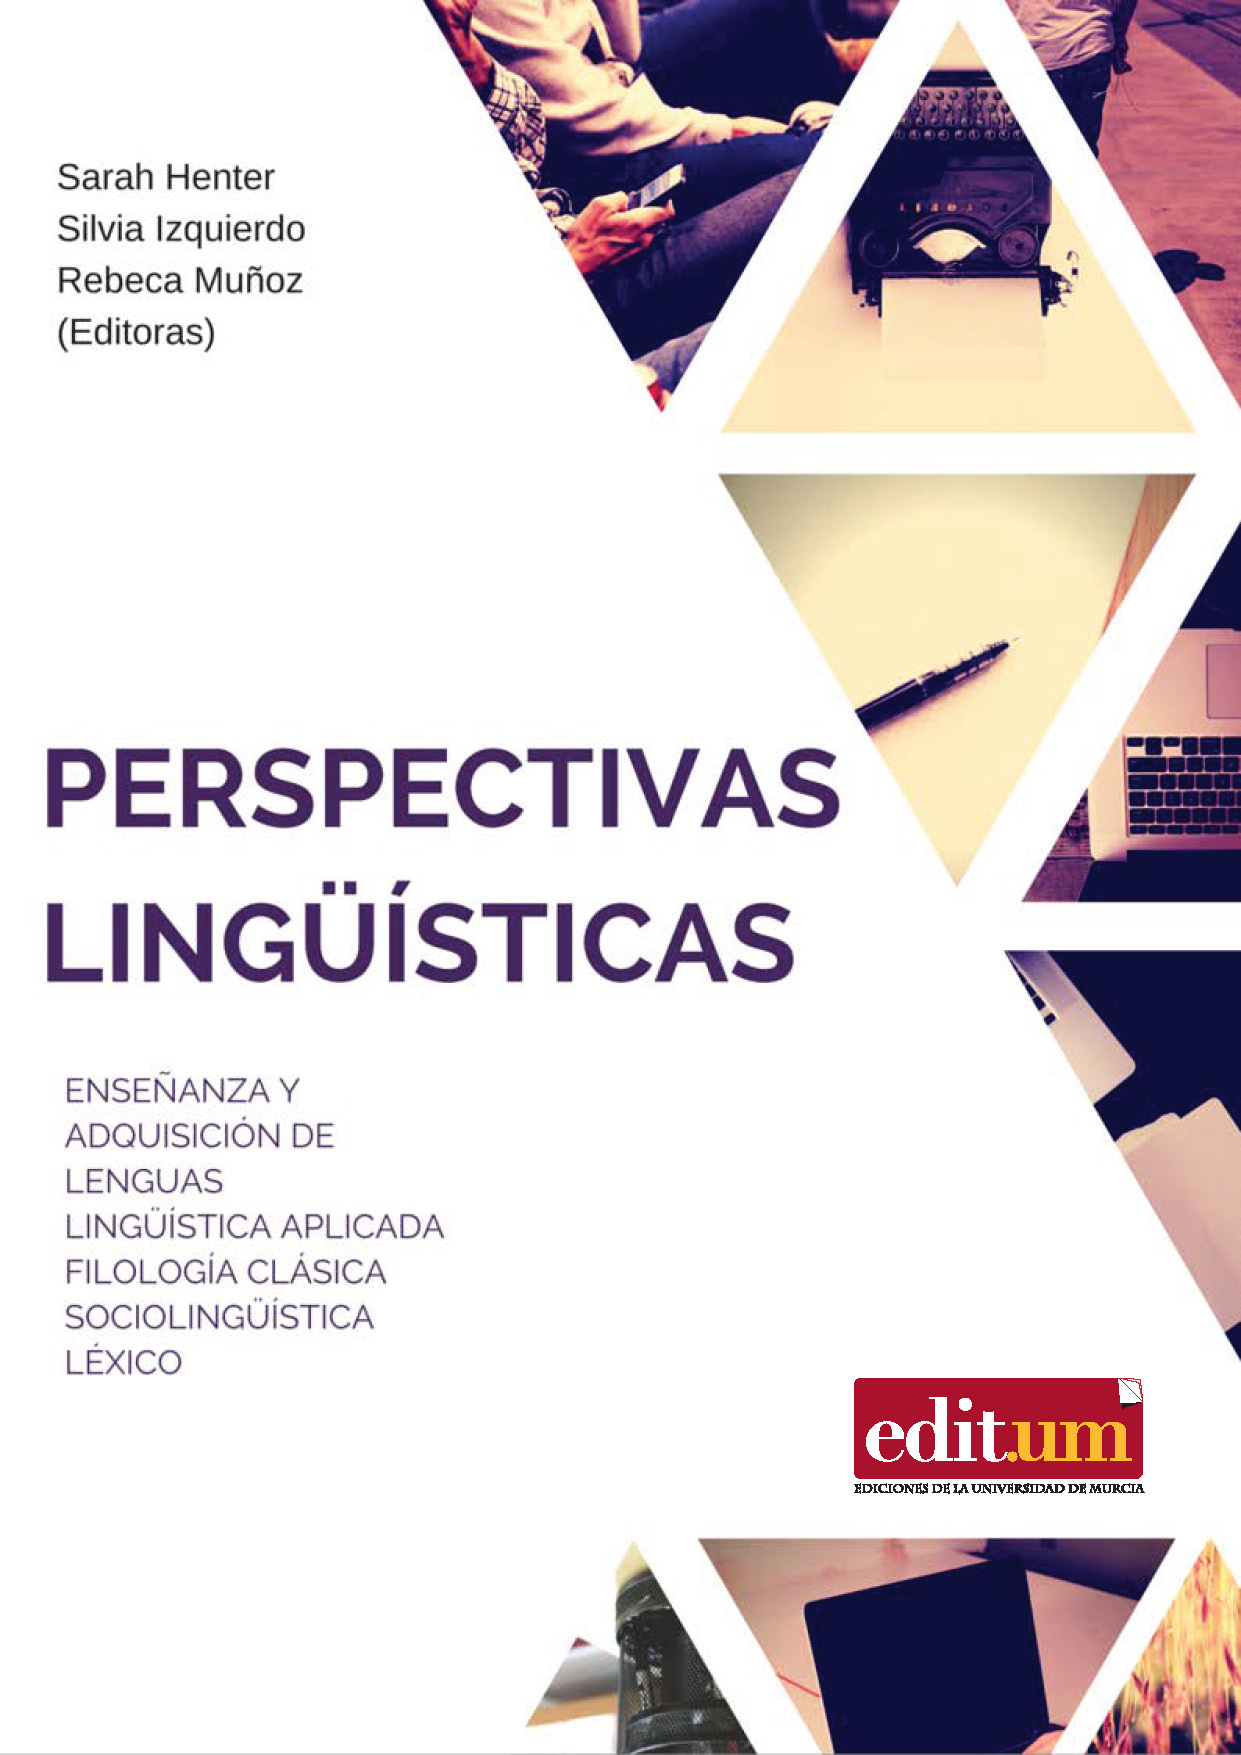 Imagen de portada del libro Perspectivas lingüísticas